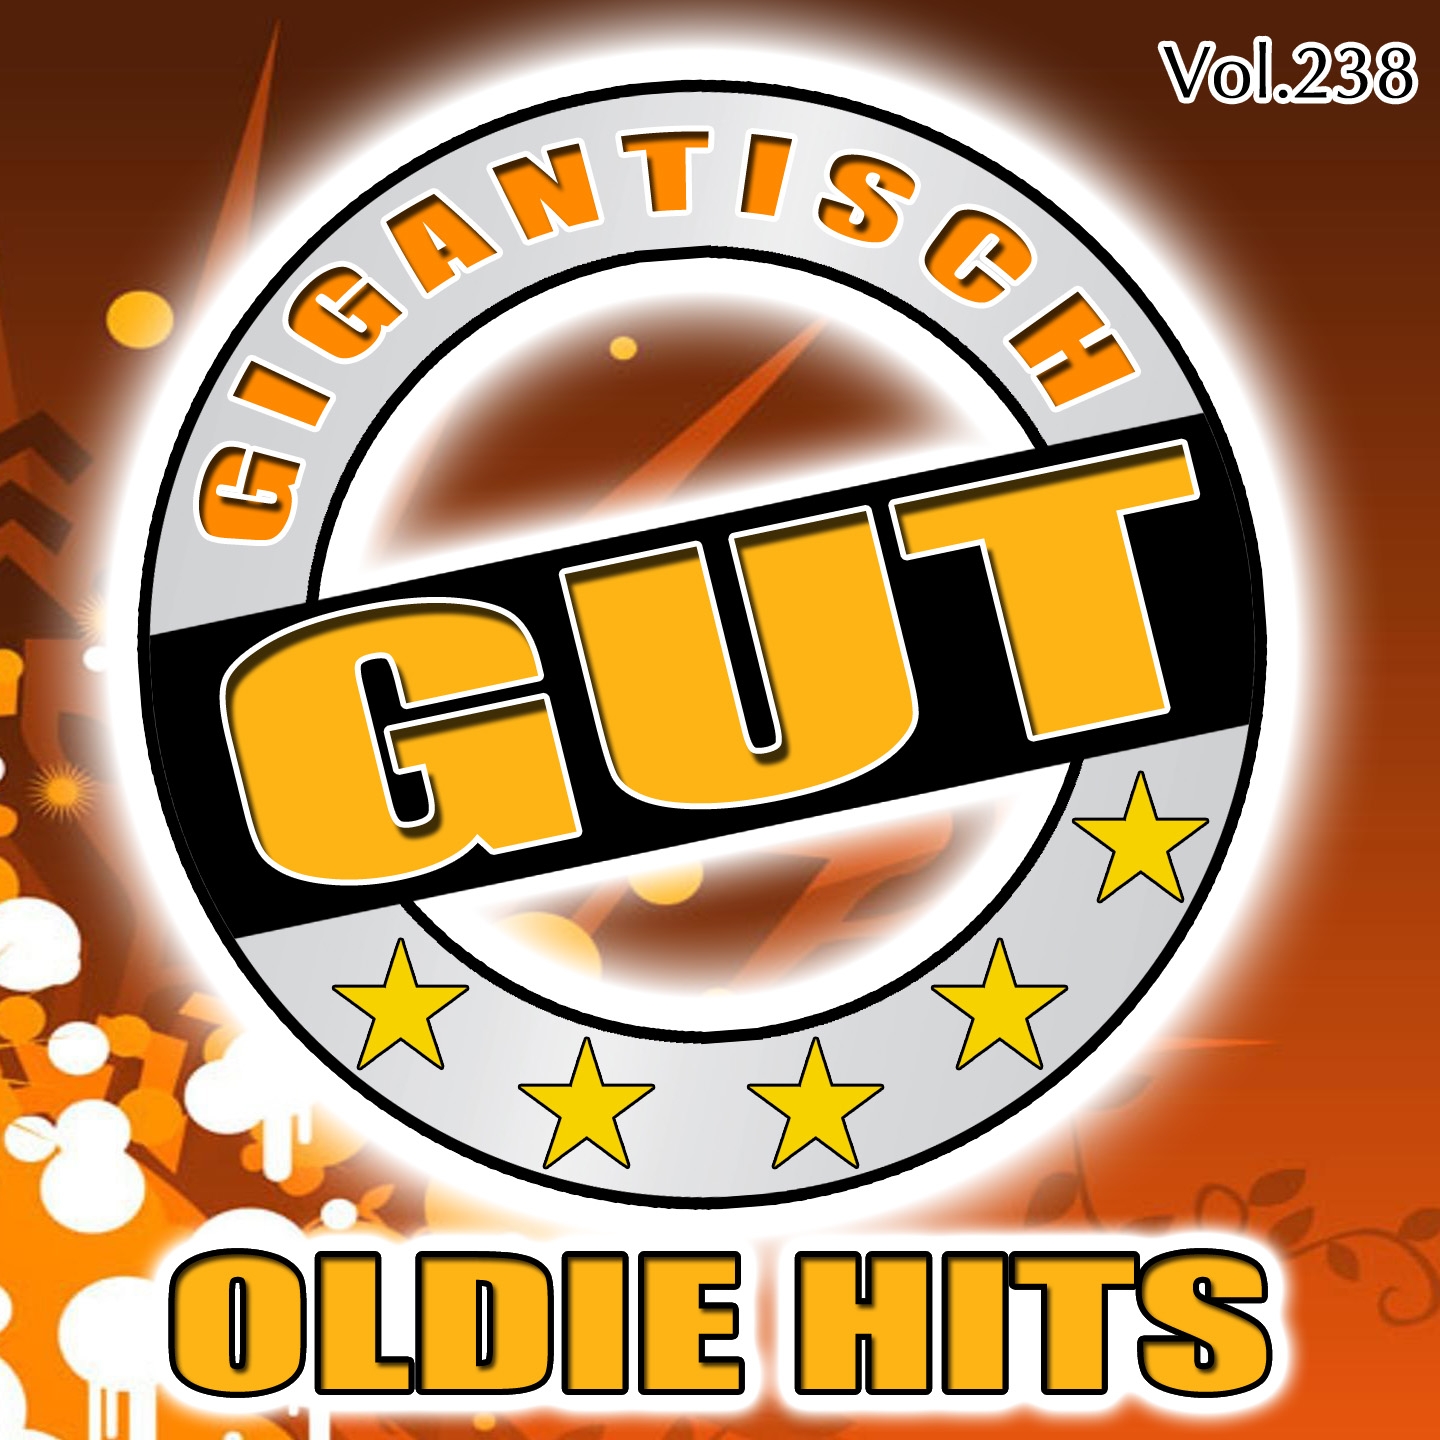 Gigantisch Gut: Oldie Hits, Vol. 238